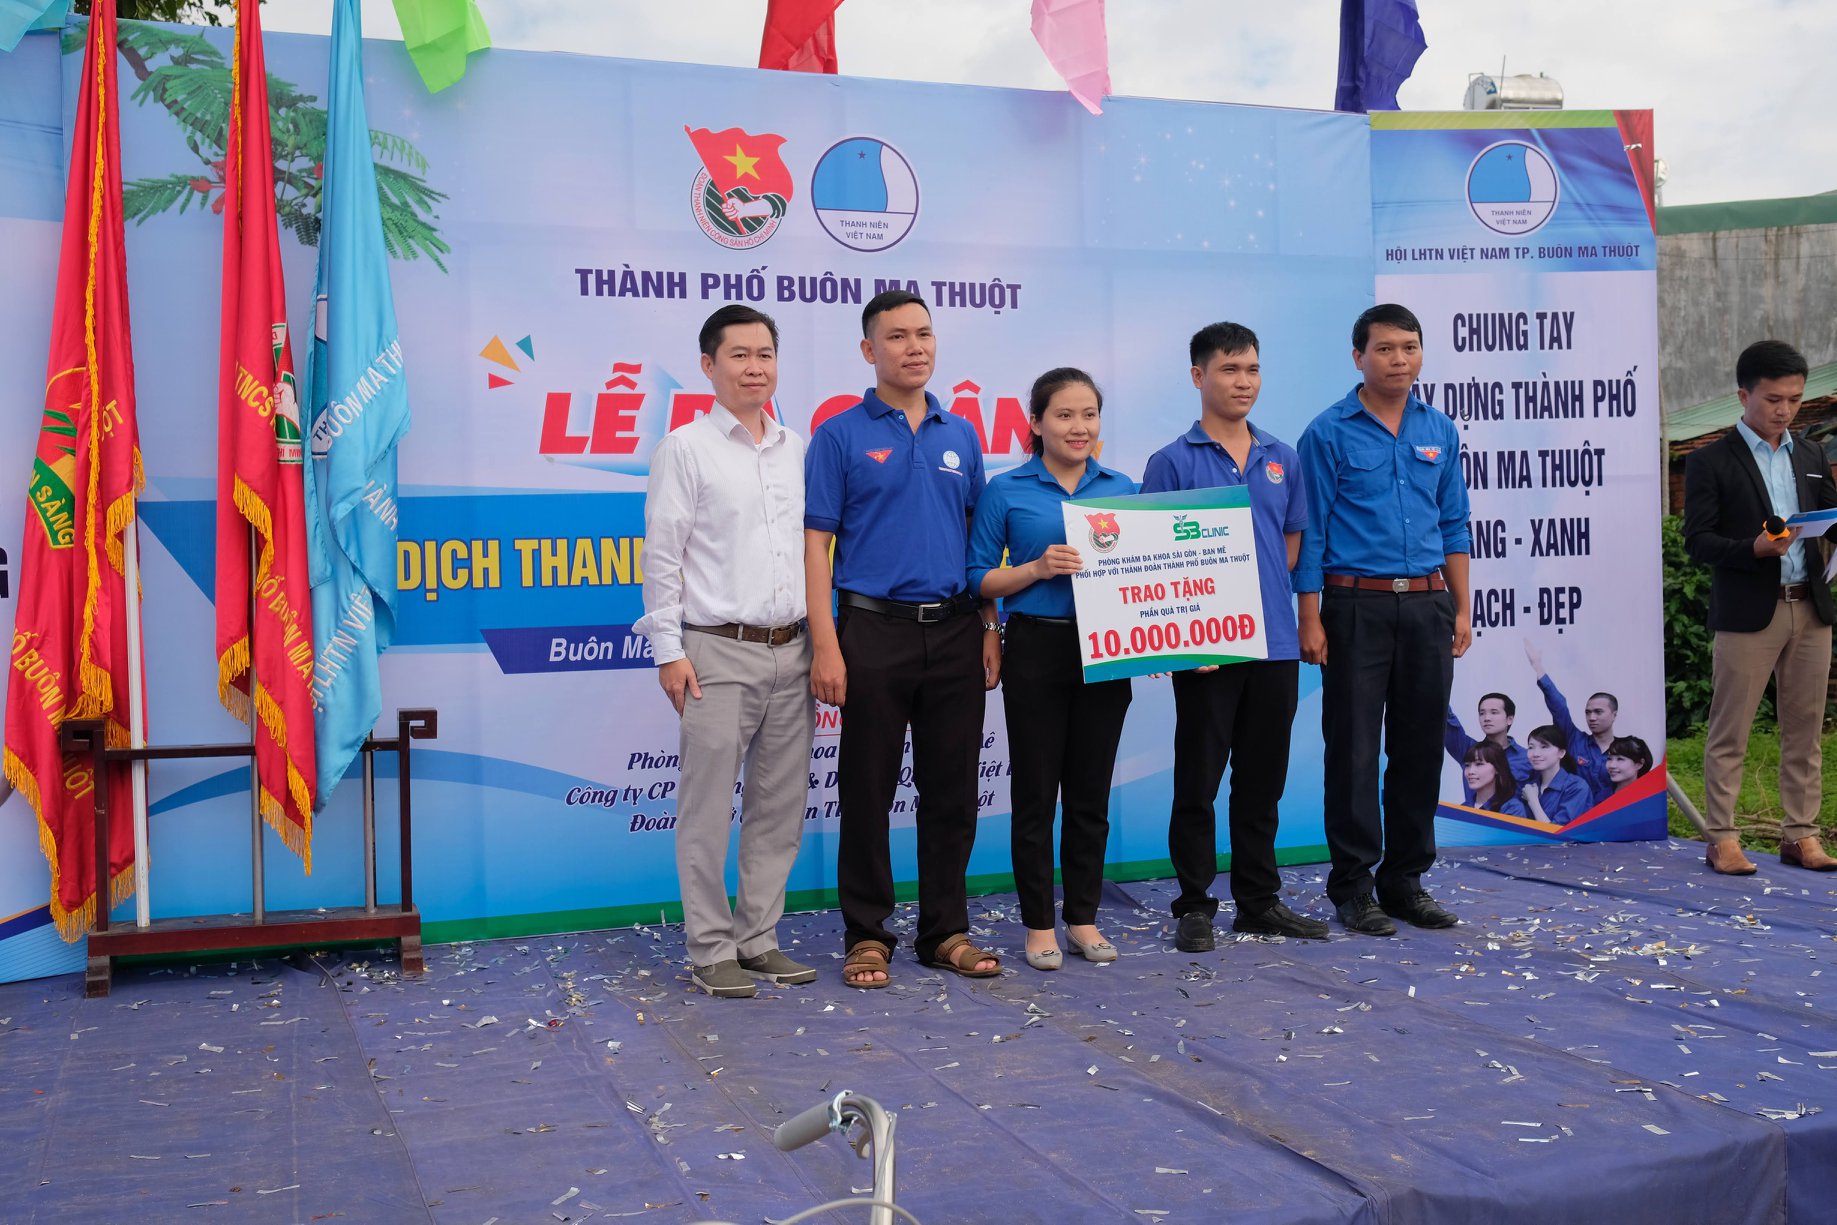 Sài Gòn - Ban Mê trao tặng xe đạp & phần quà 10 triệu đồng cho người dân khó khăn tại TP.BMT